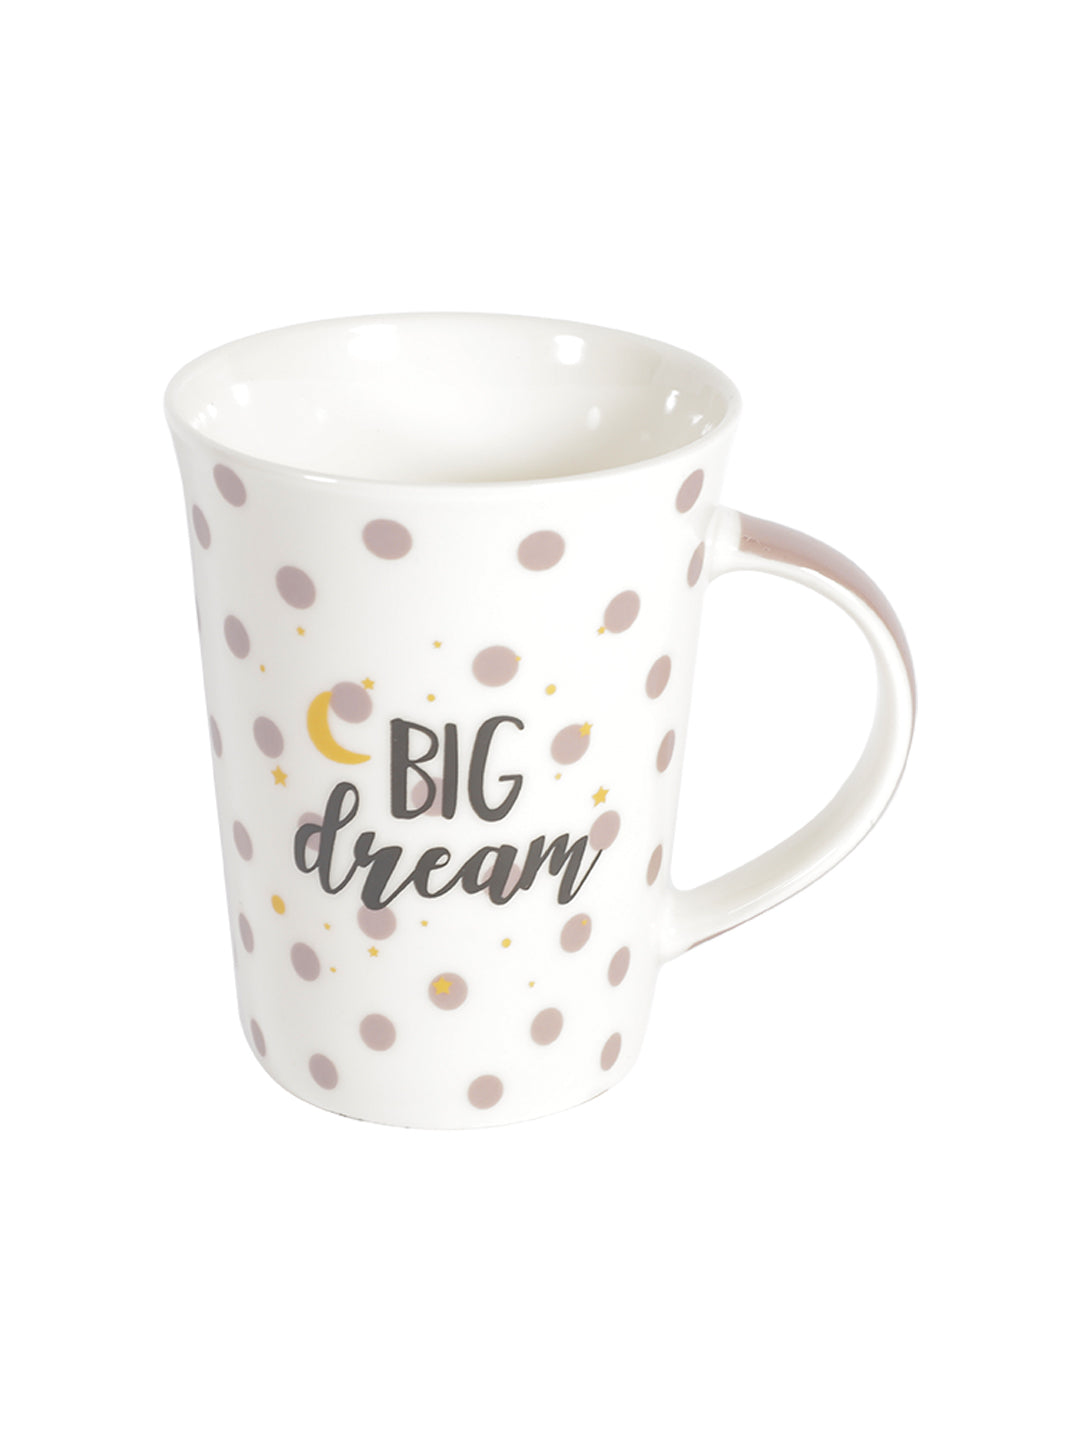 VON CASA 350Ml "BIG dream" Big Mug - White